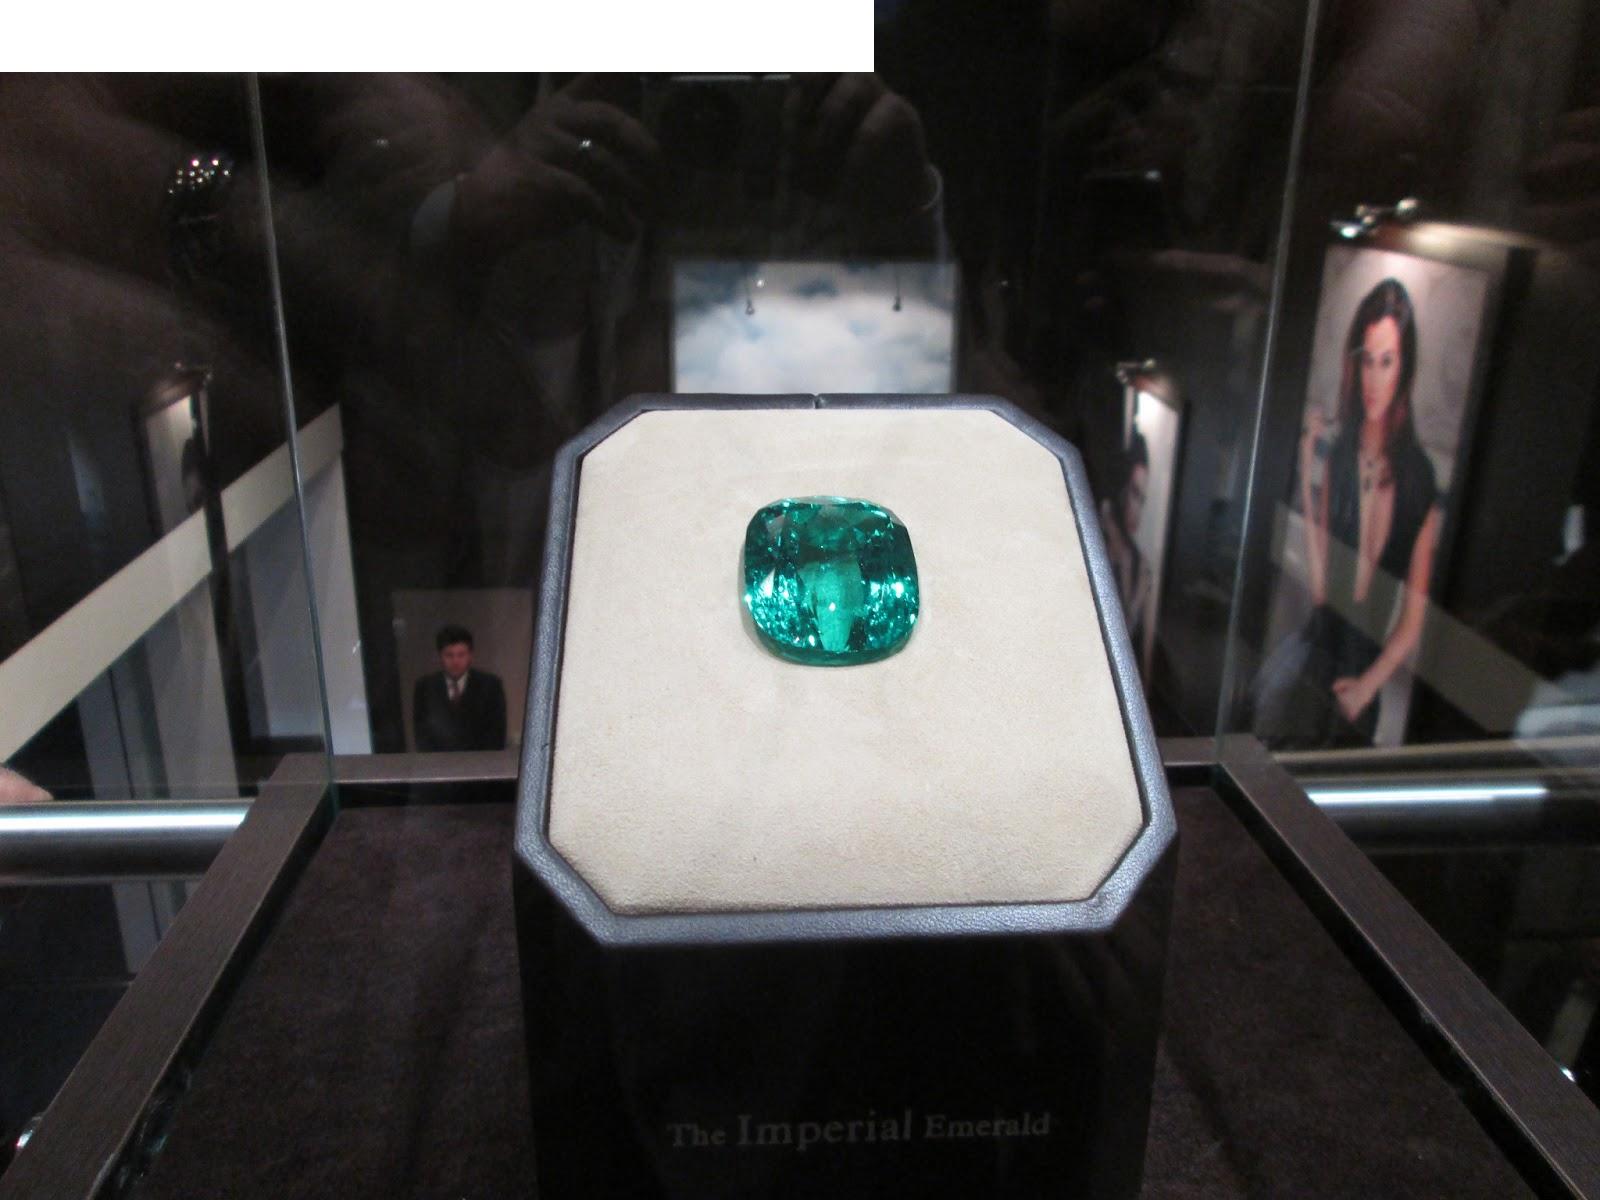 "Imperial Emerald" hauv 206 carats